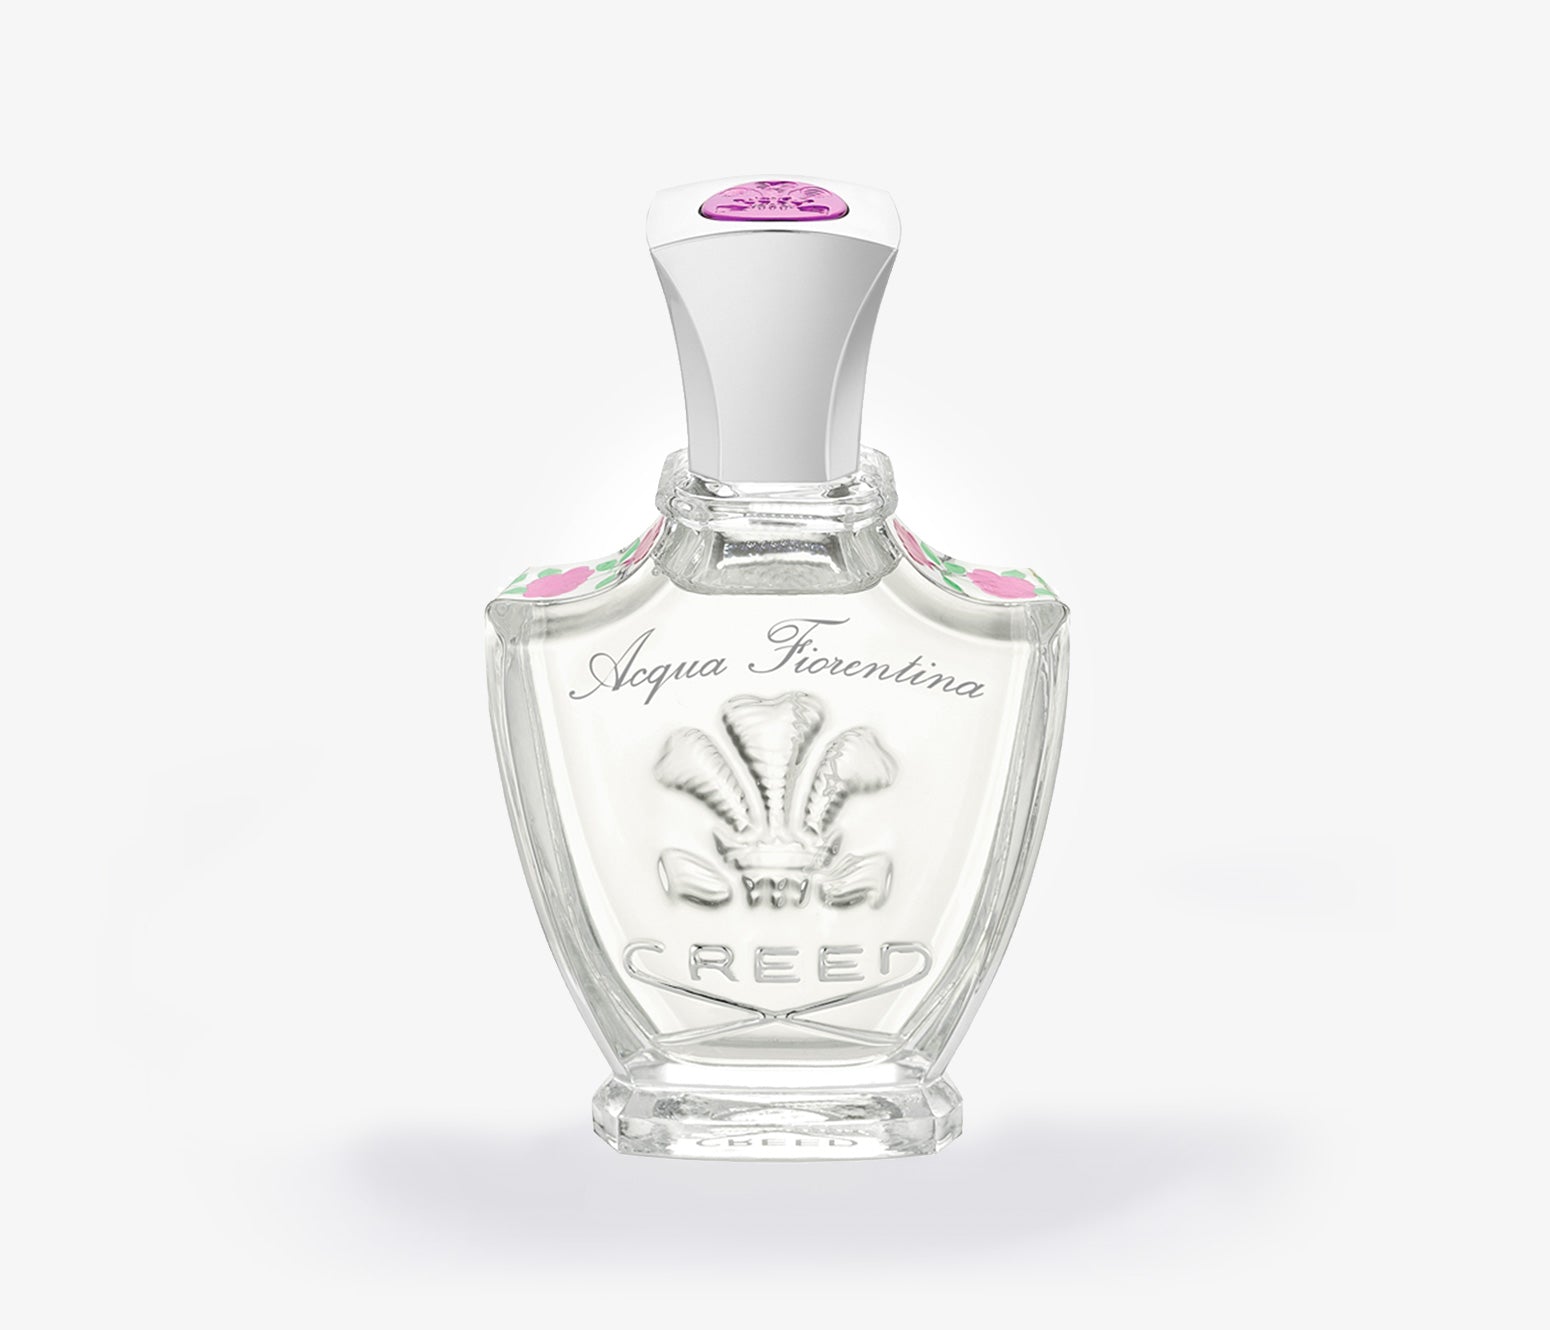 Creed - Acqua Fiorentina - 75ml - GTH2514 - Product Image - Fragrance - Les Senteurs